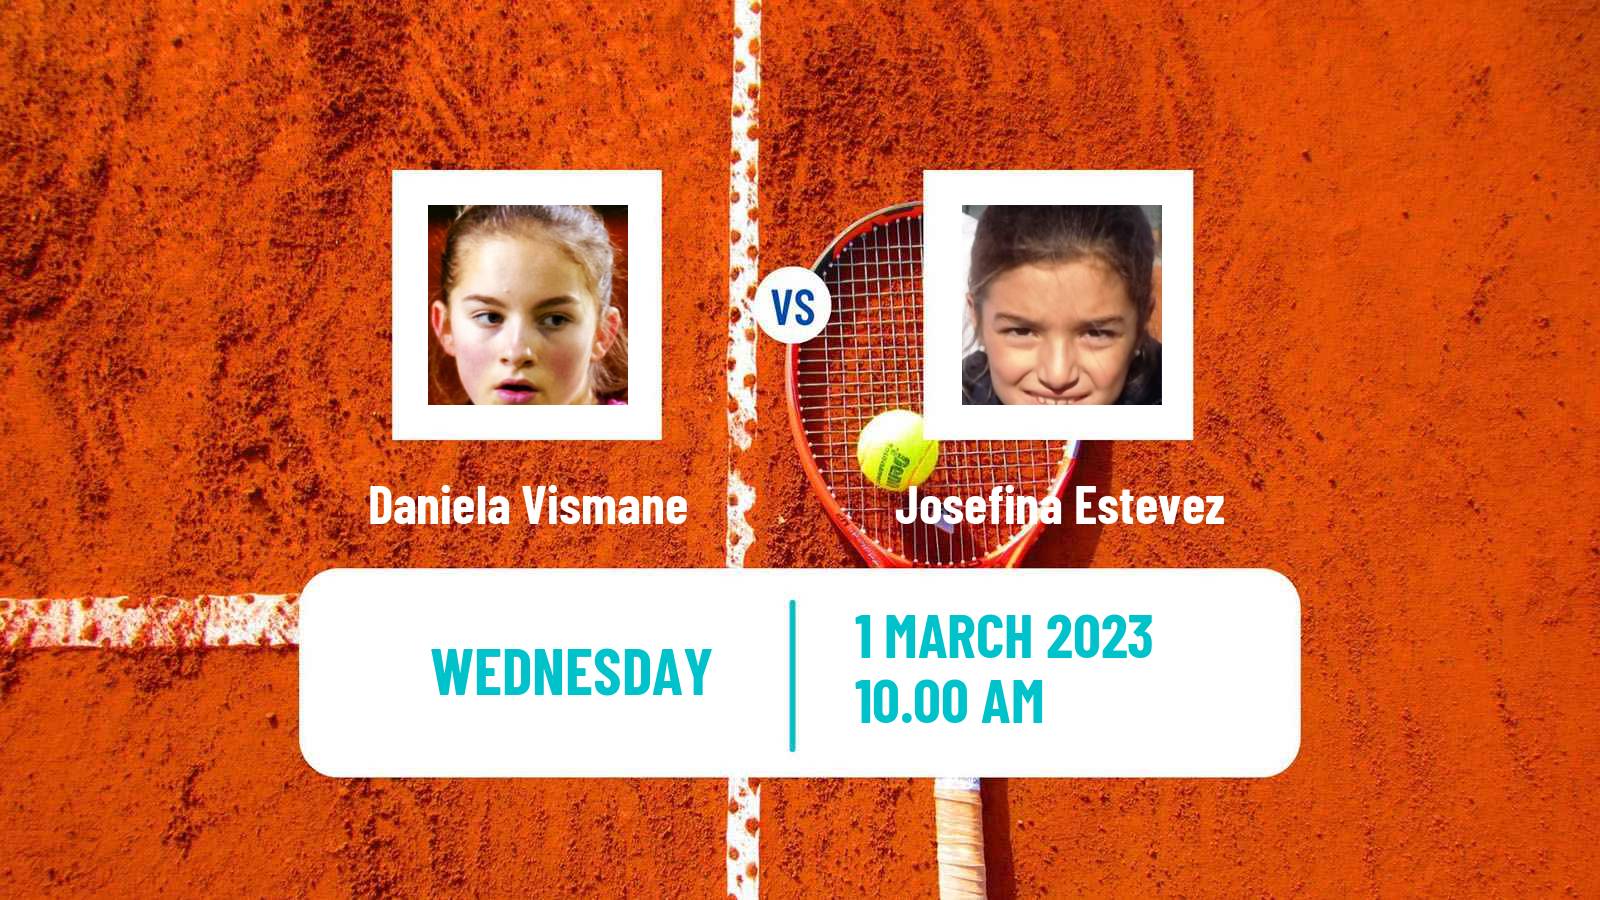 Tennis ITF Tournaments Daniela Vismane - Josefina Estevez